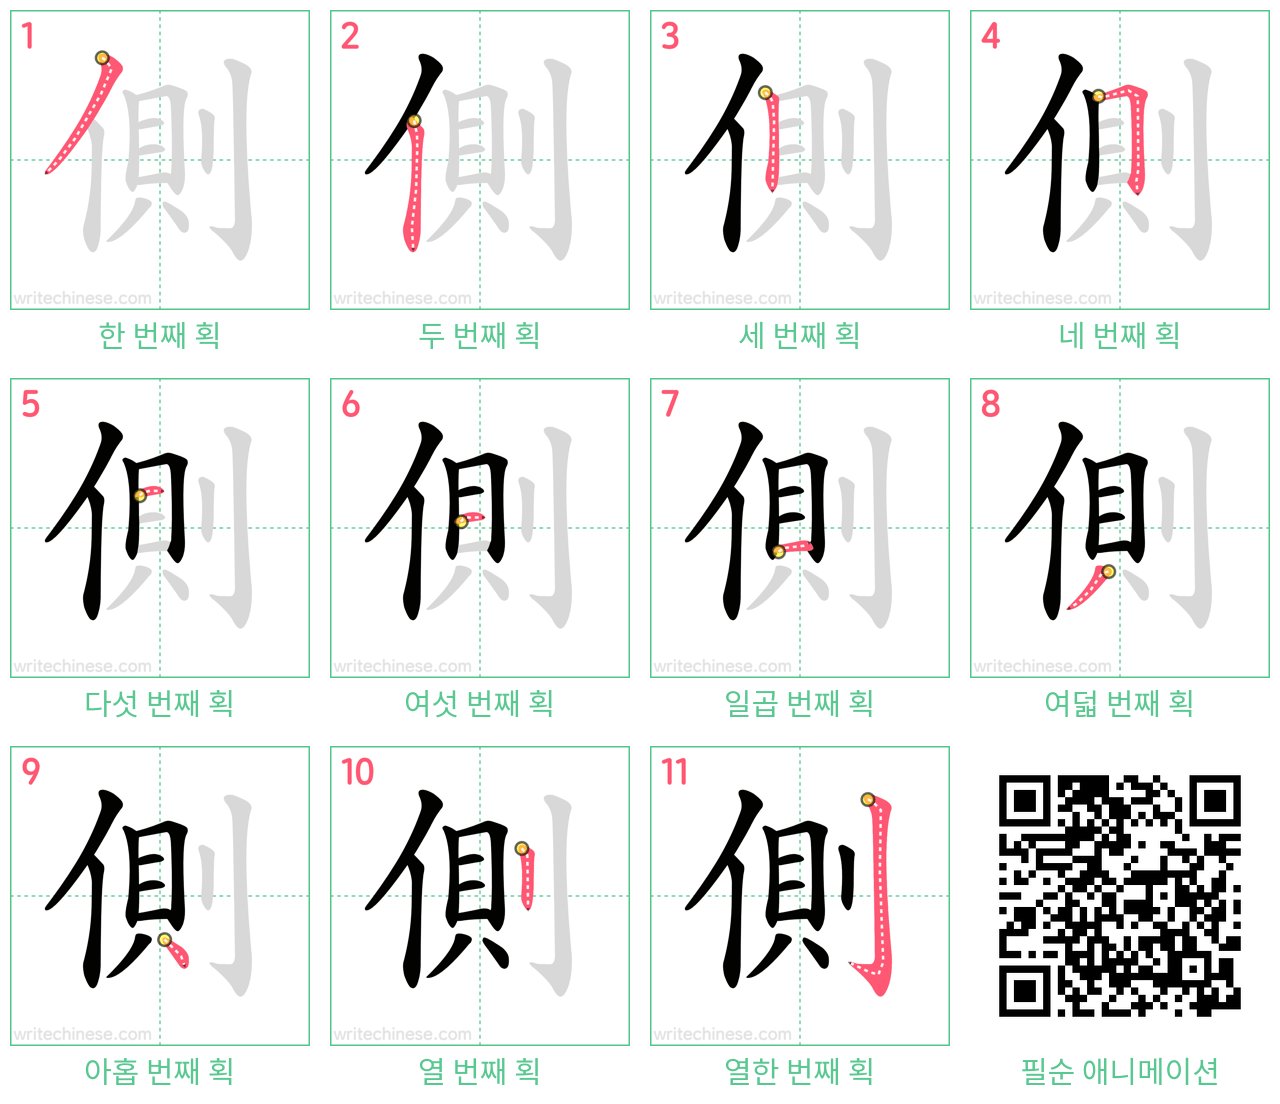 側 step-by-step stroke order diagrams